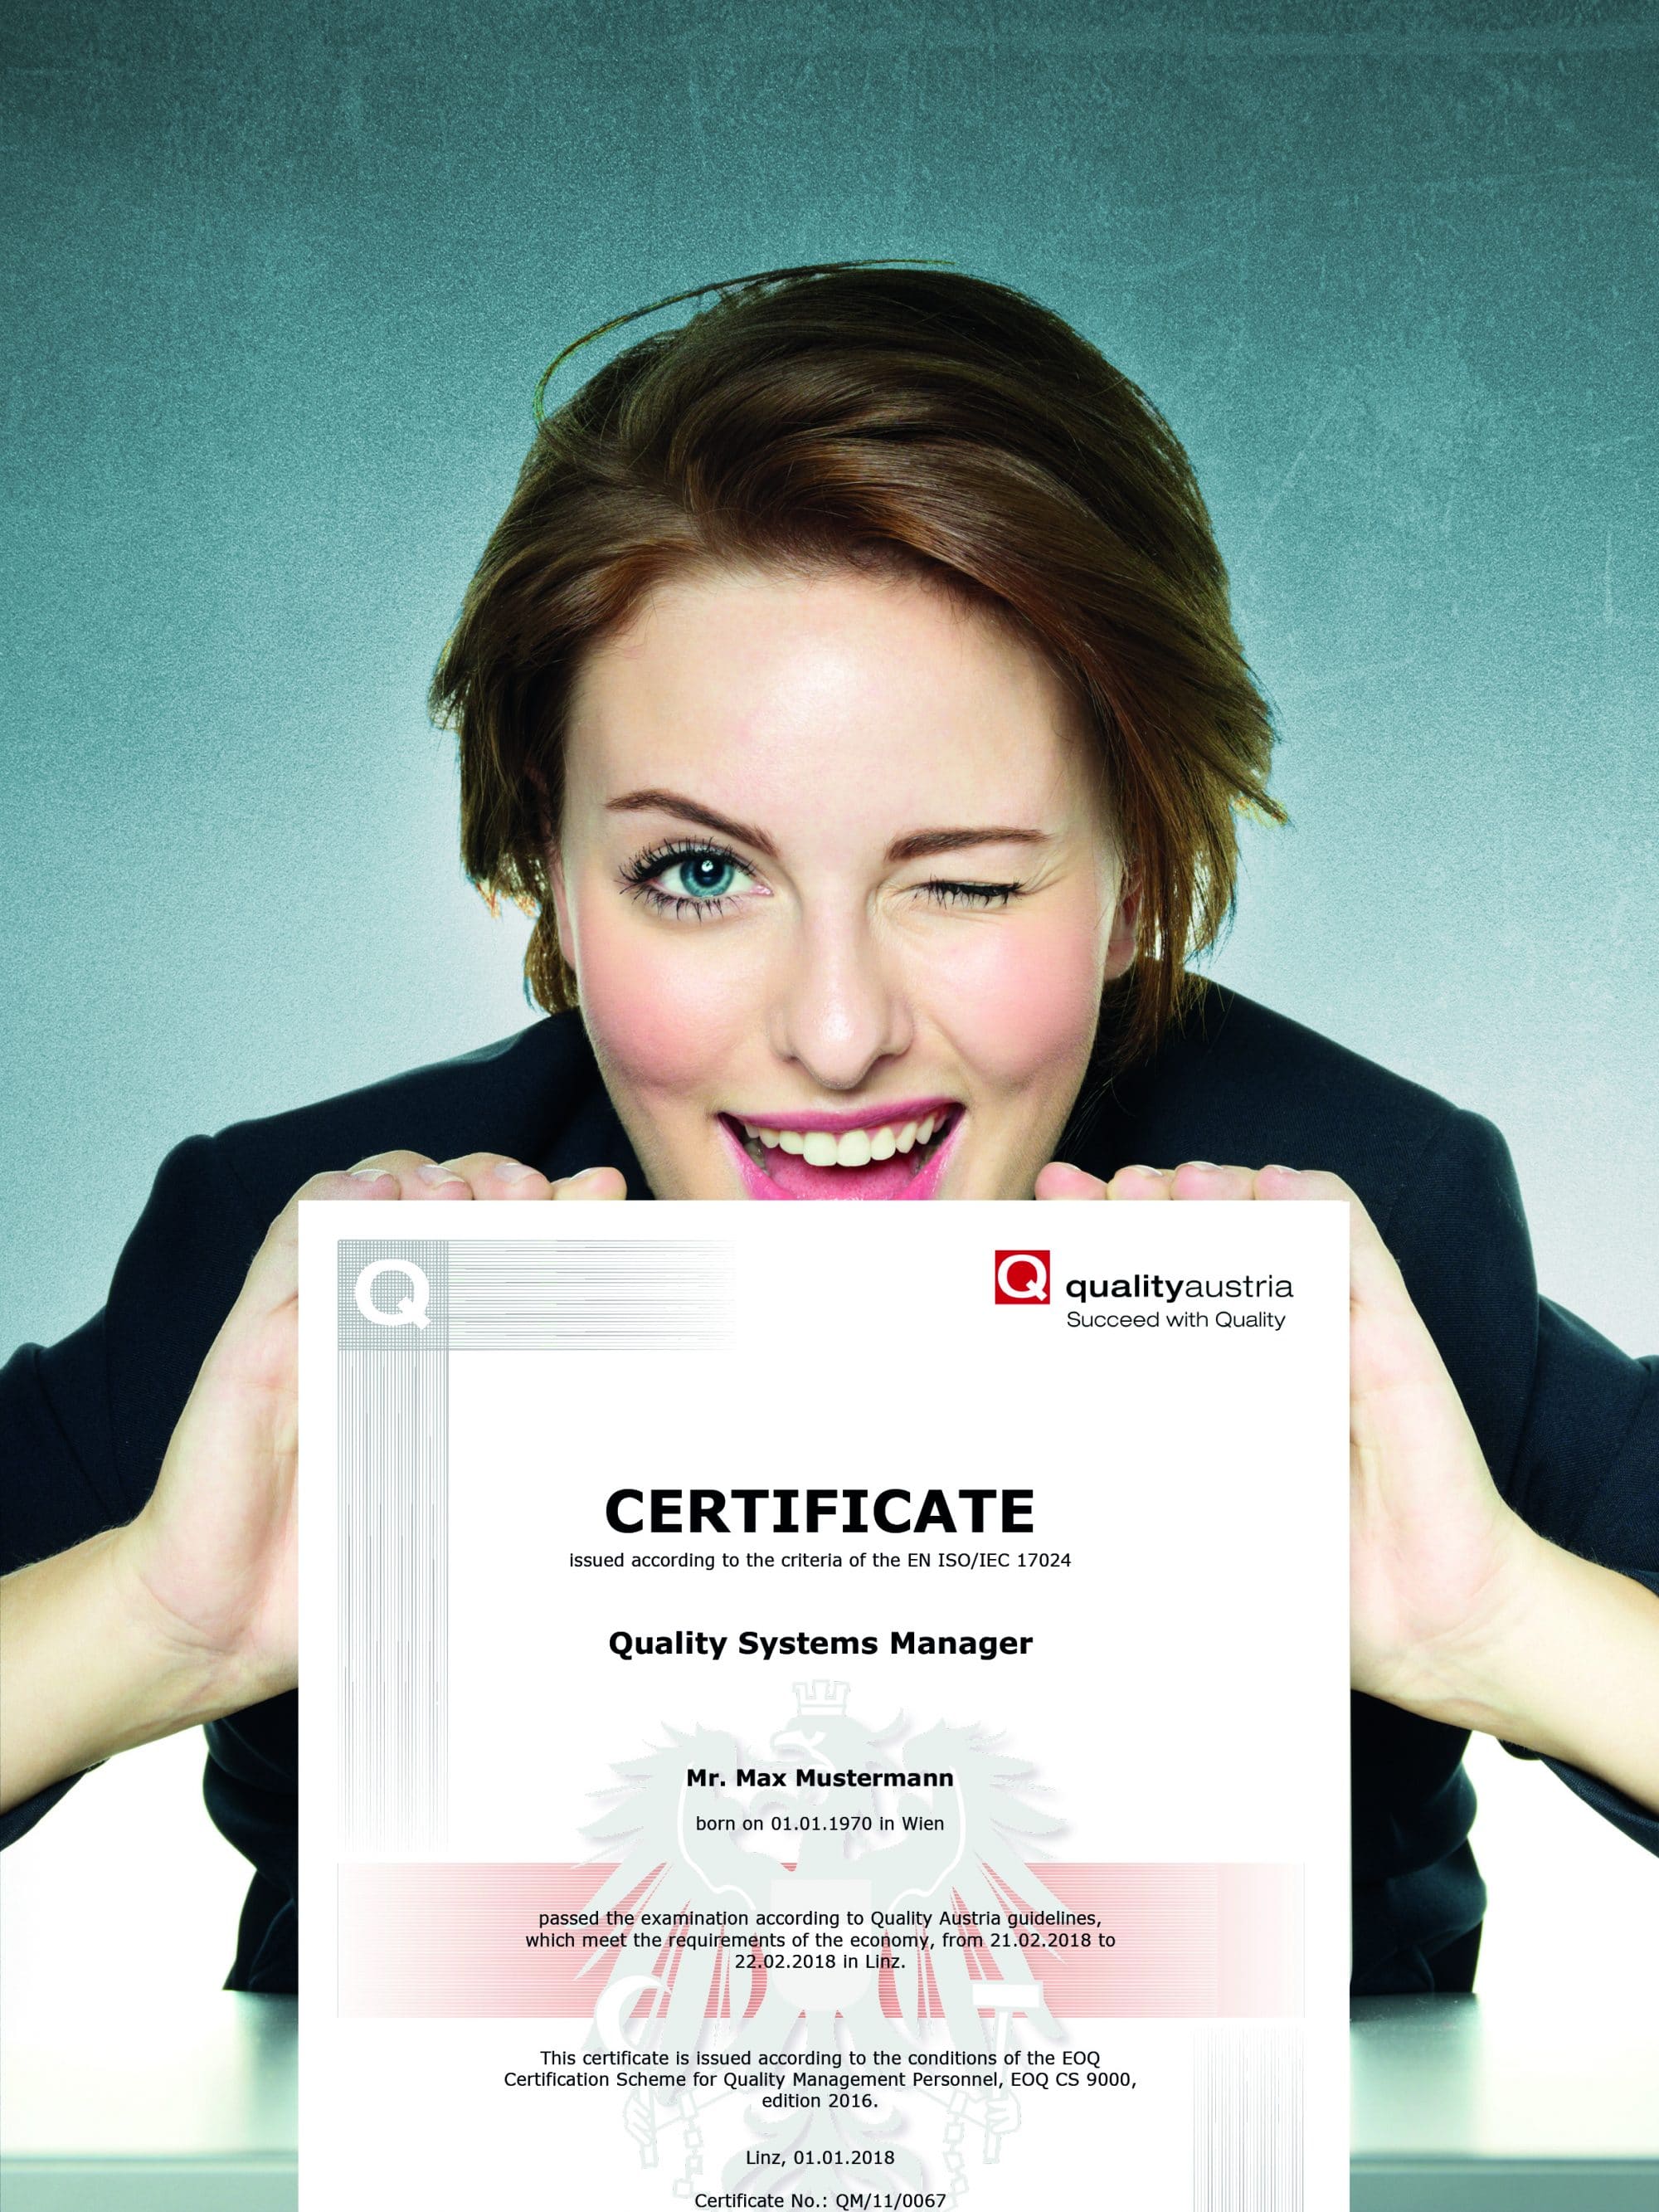 Frau präsentiert "Quality Systems Manager" Zertifikat.